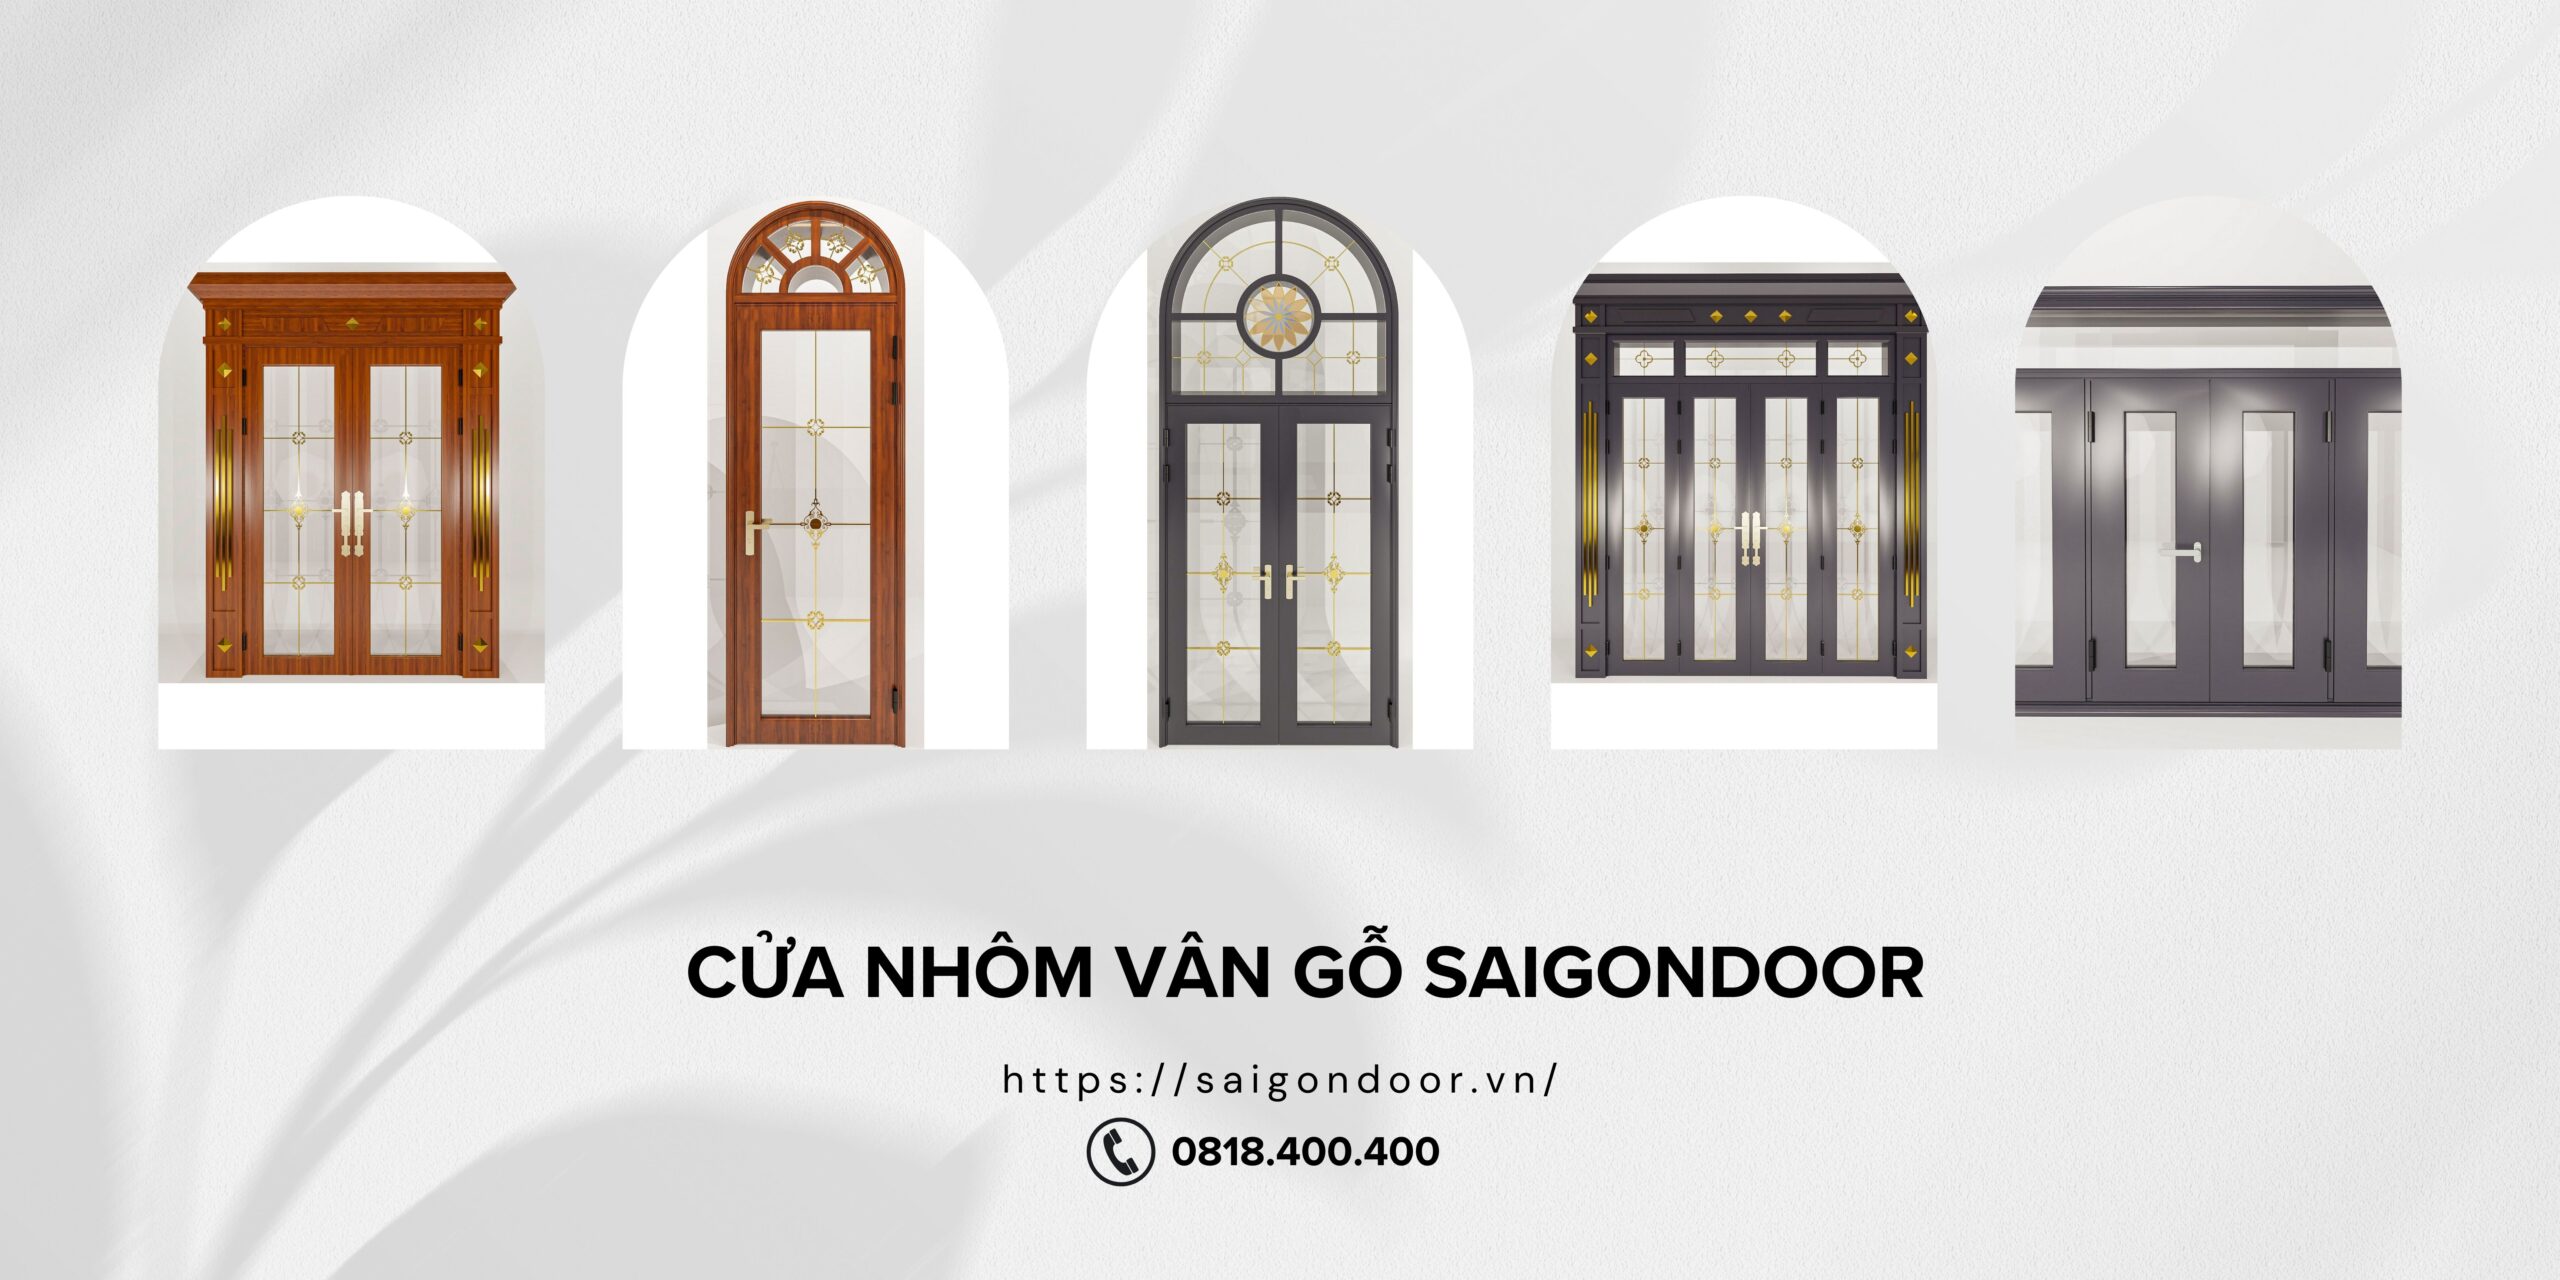 Hình ảnh cửa thép vân gỗ tại SaigonDoor